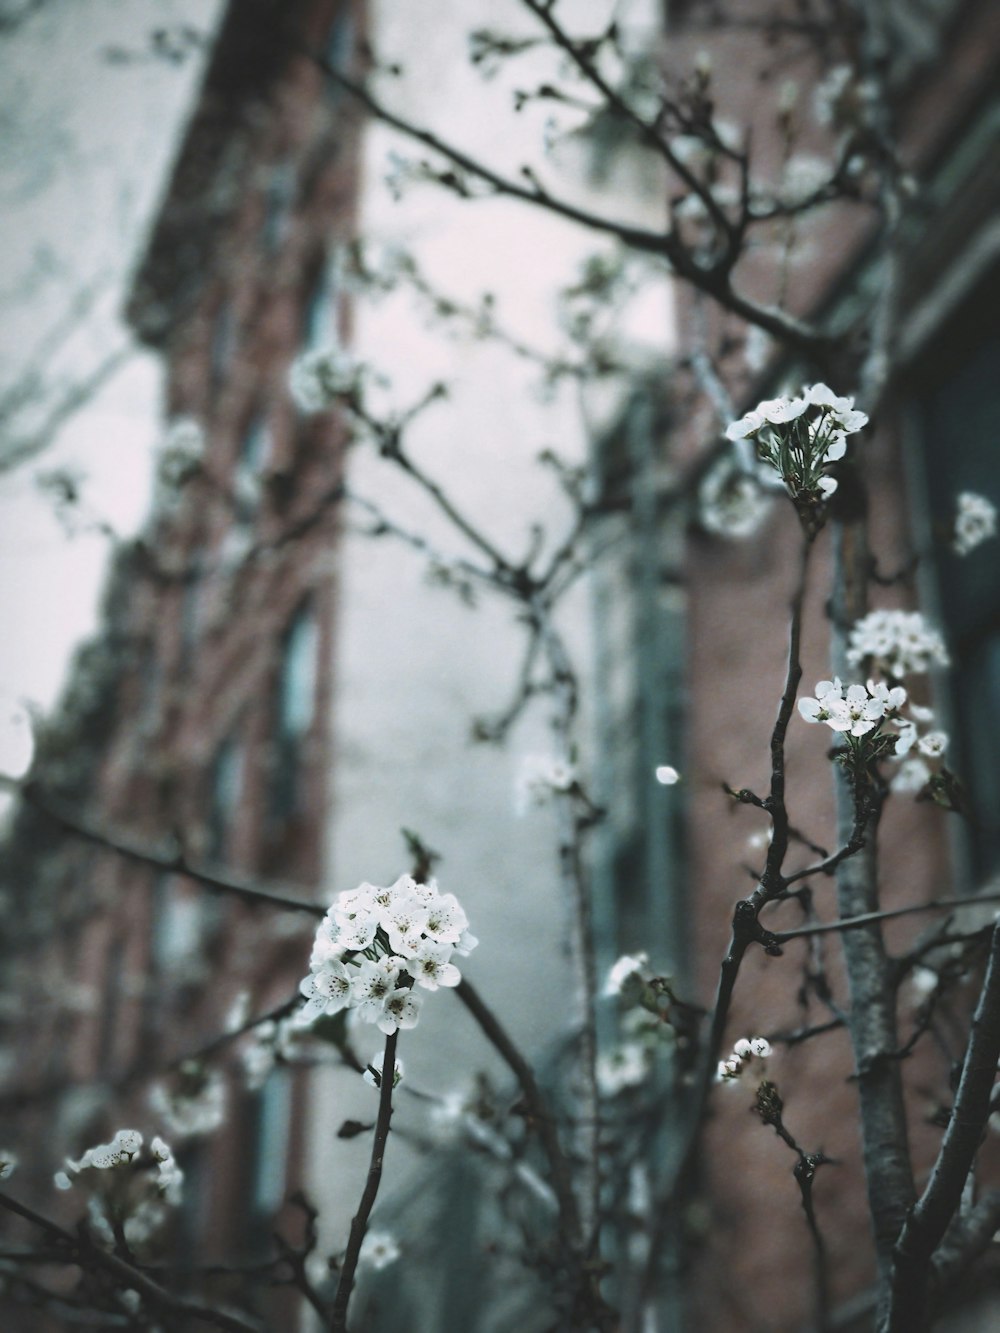 茶色の建物の近くに白い花びらの花のクローズアップ写真